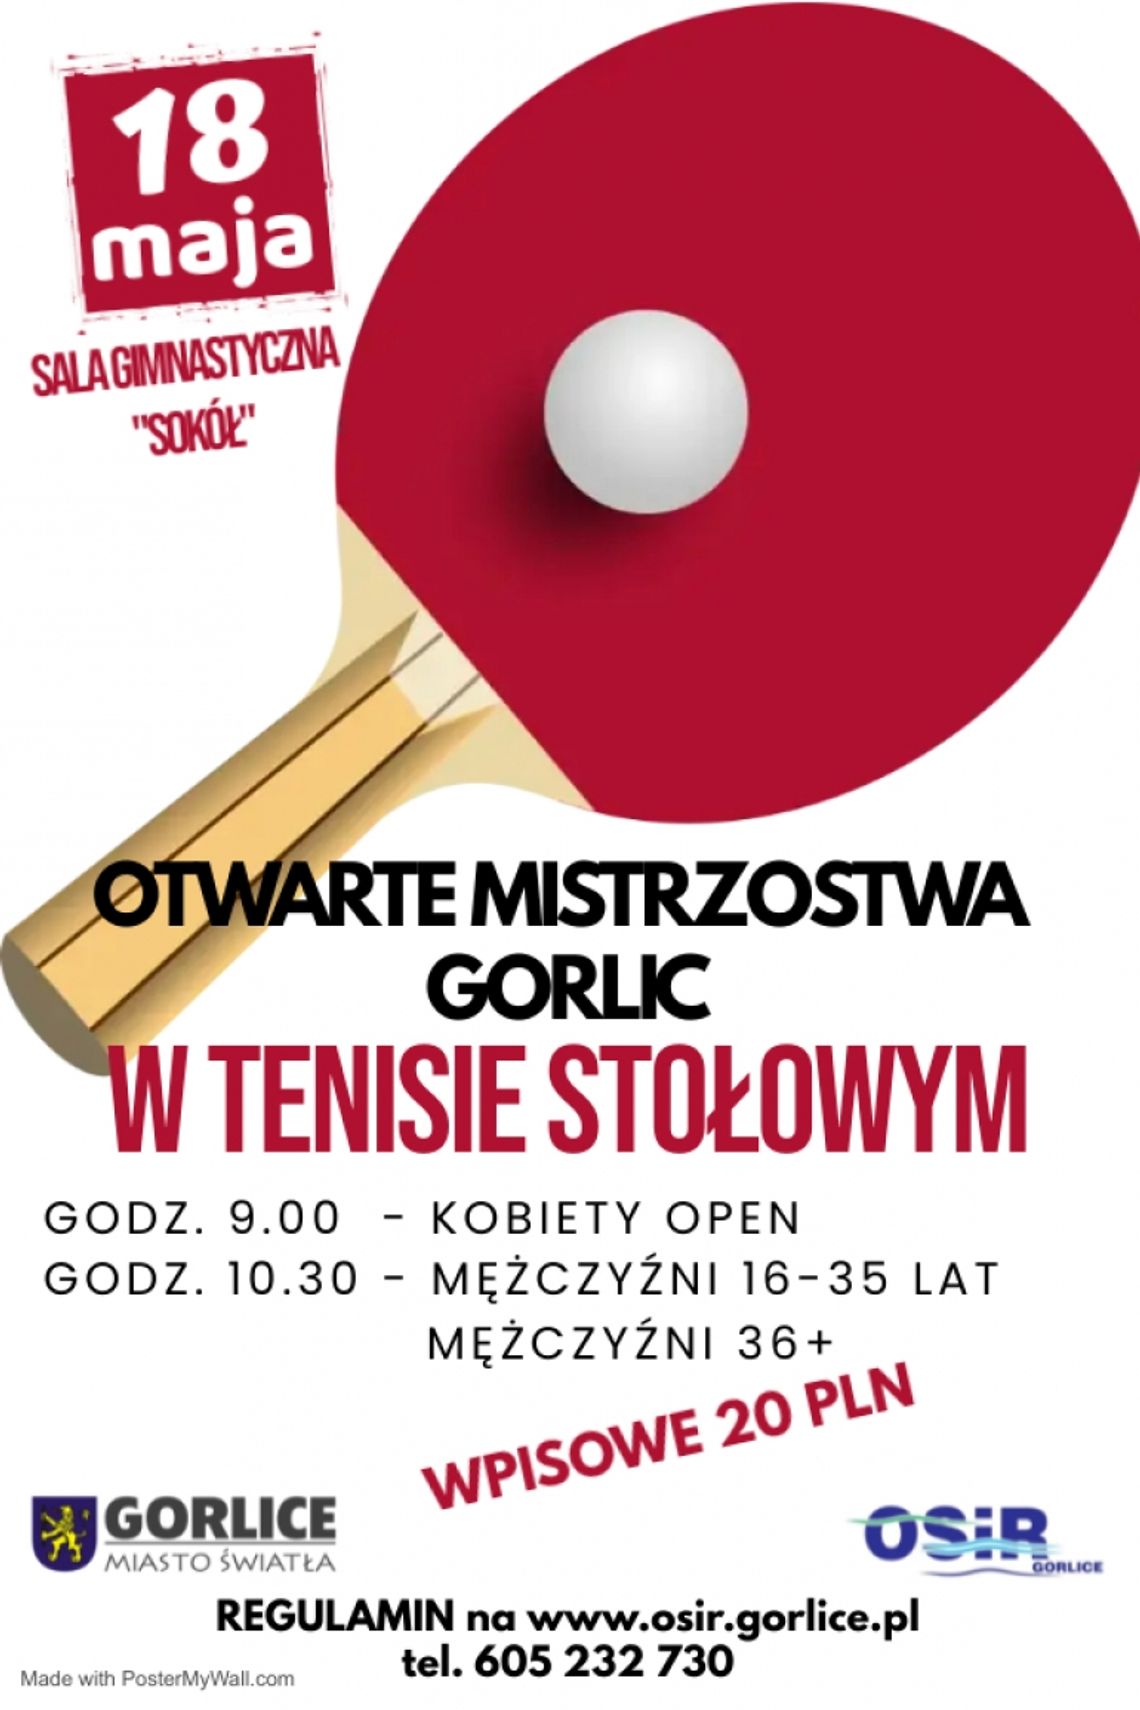 Otwarte Mistrzostwa Gorlic w Tenisie Stołowym | zapowiedzi imprez – halogorlice.info